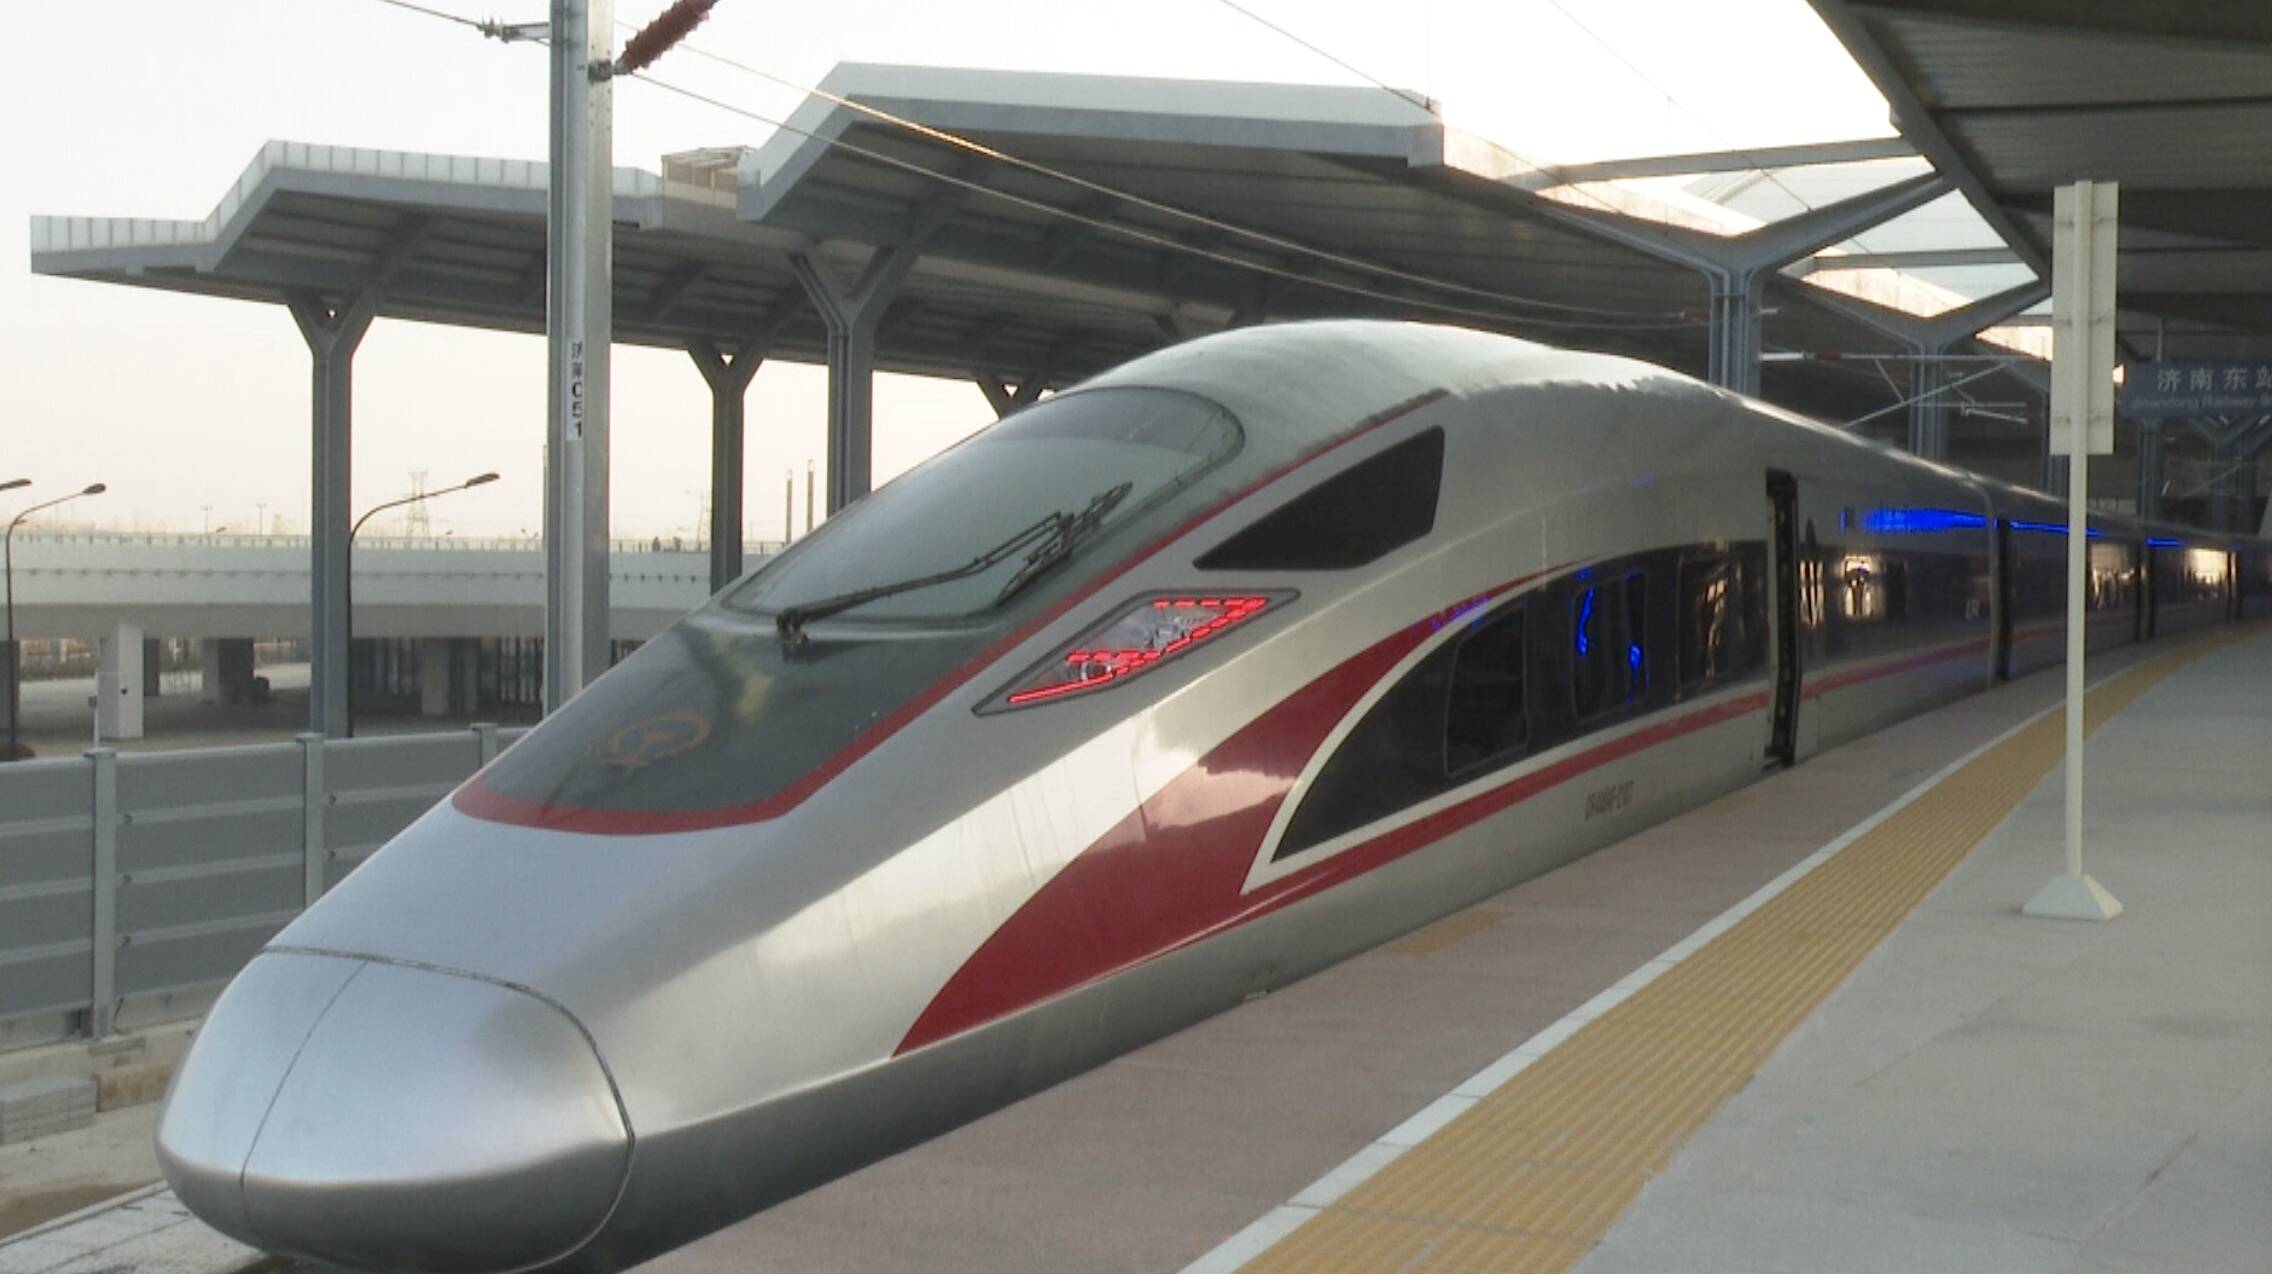 国铁济南局7月1日实行新的列车运行图 济青两地高铁再度加密